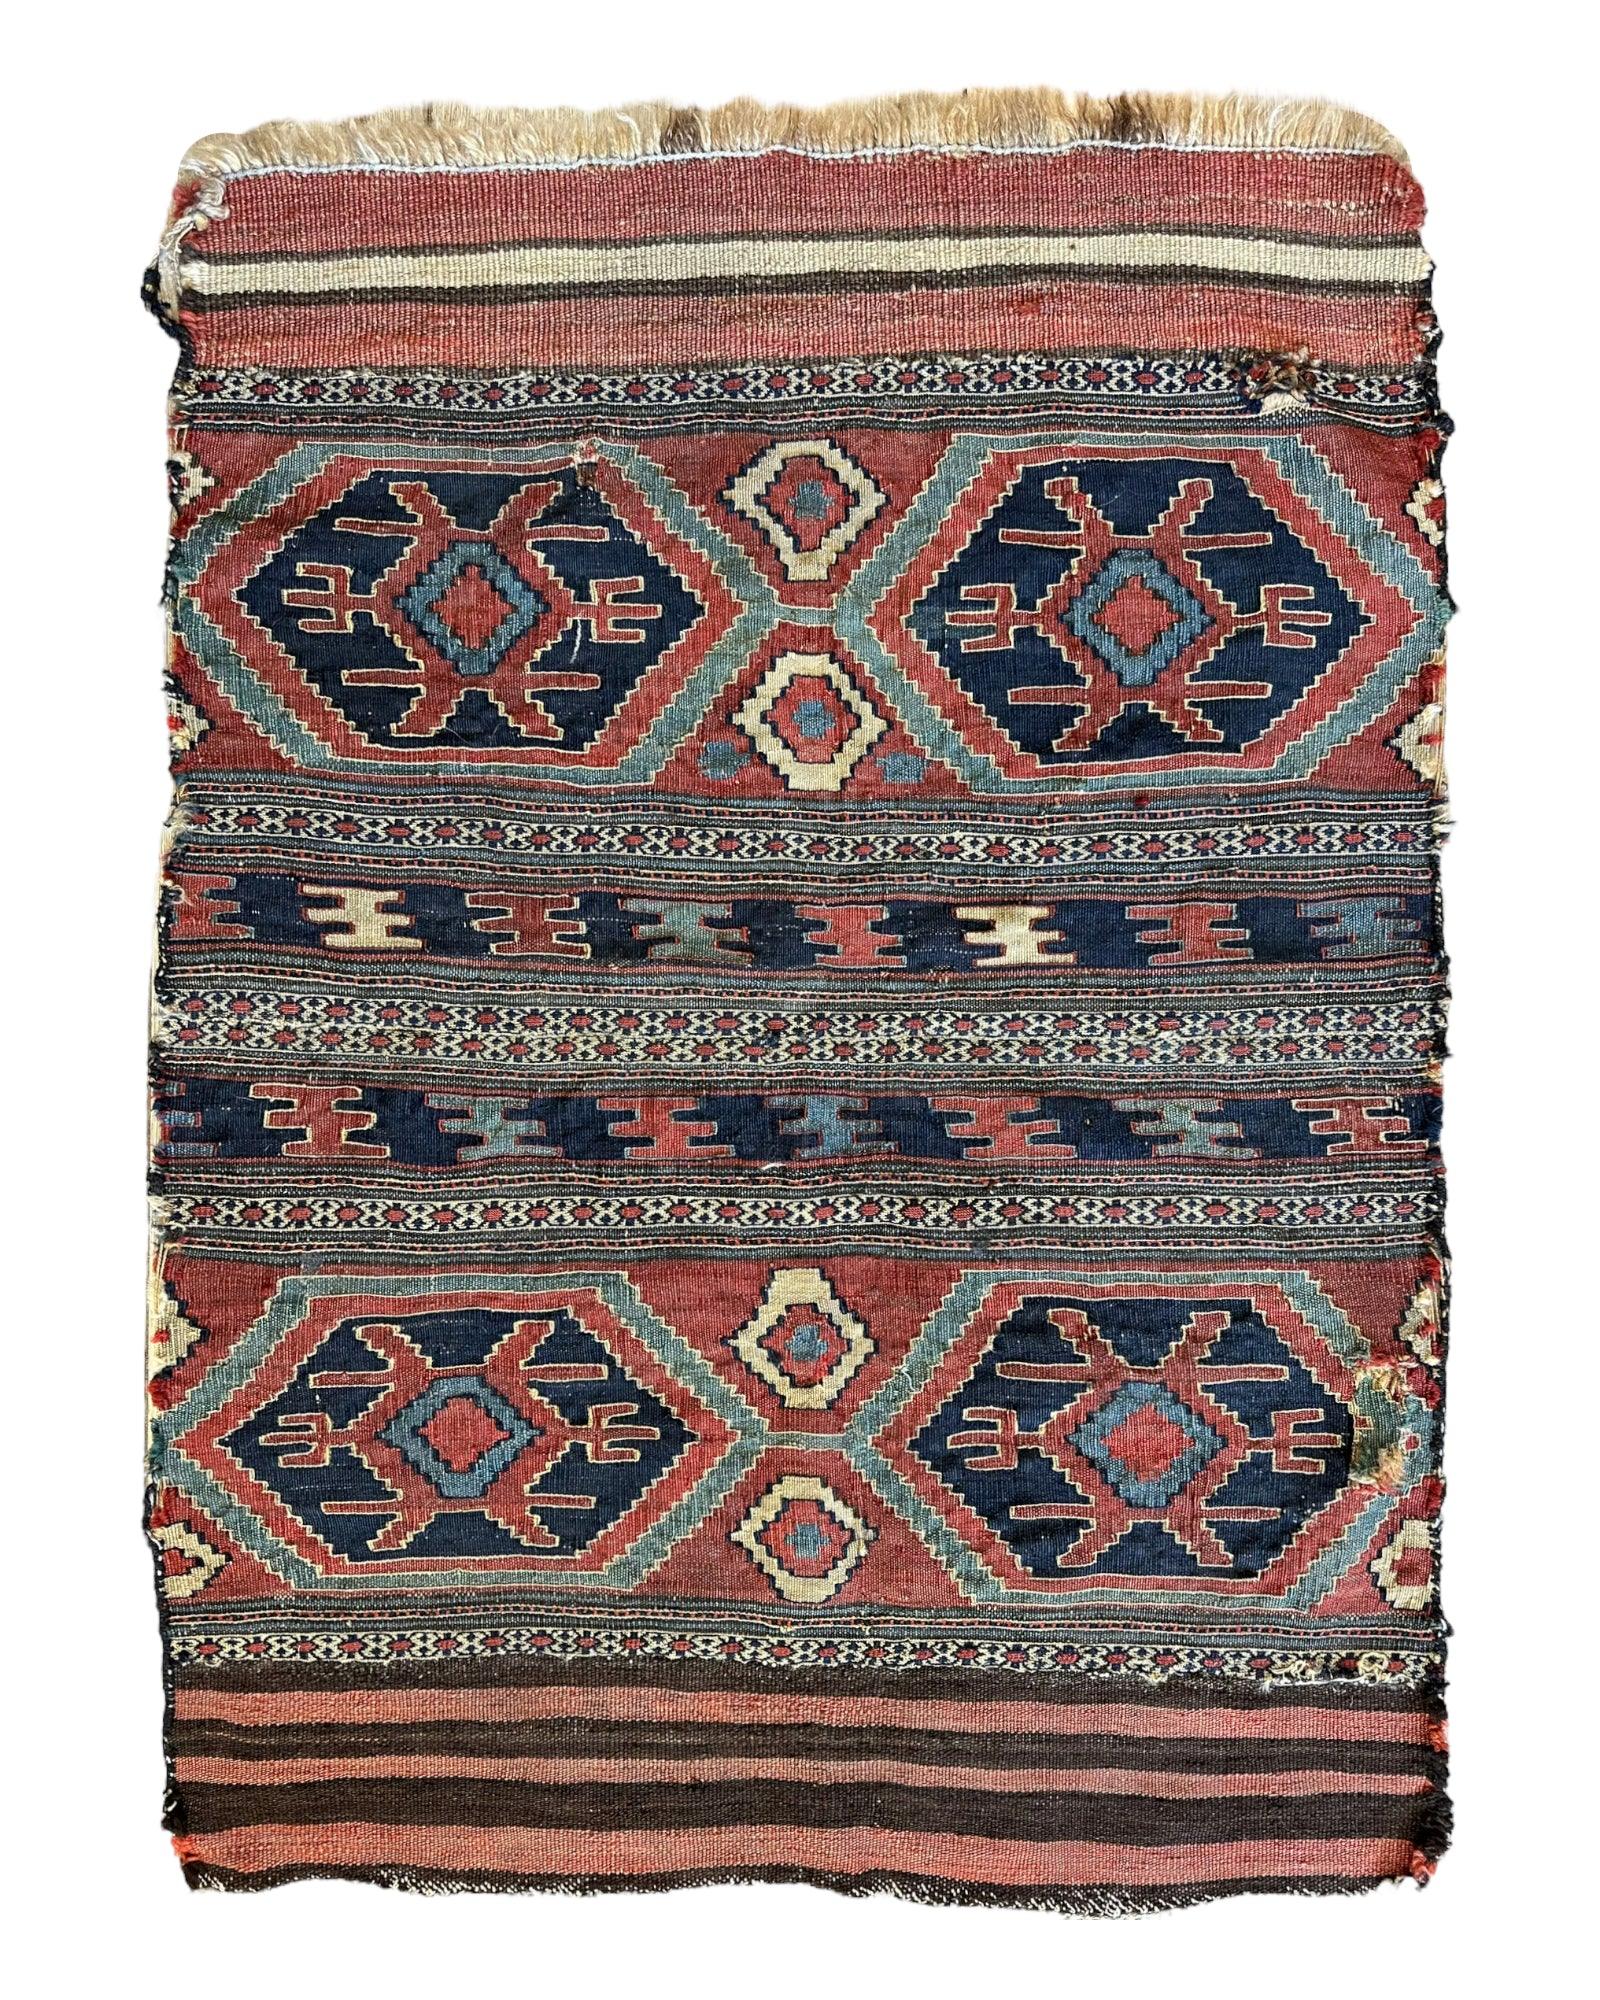 Antique 19th Century Caucasian Shahsavan Mafrash Panel Rug 32” x 36”